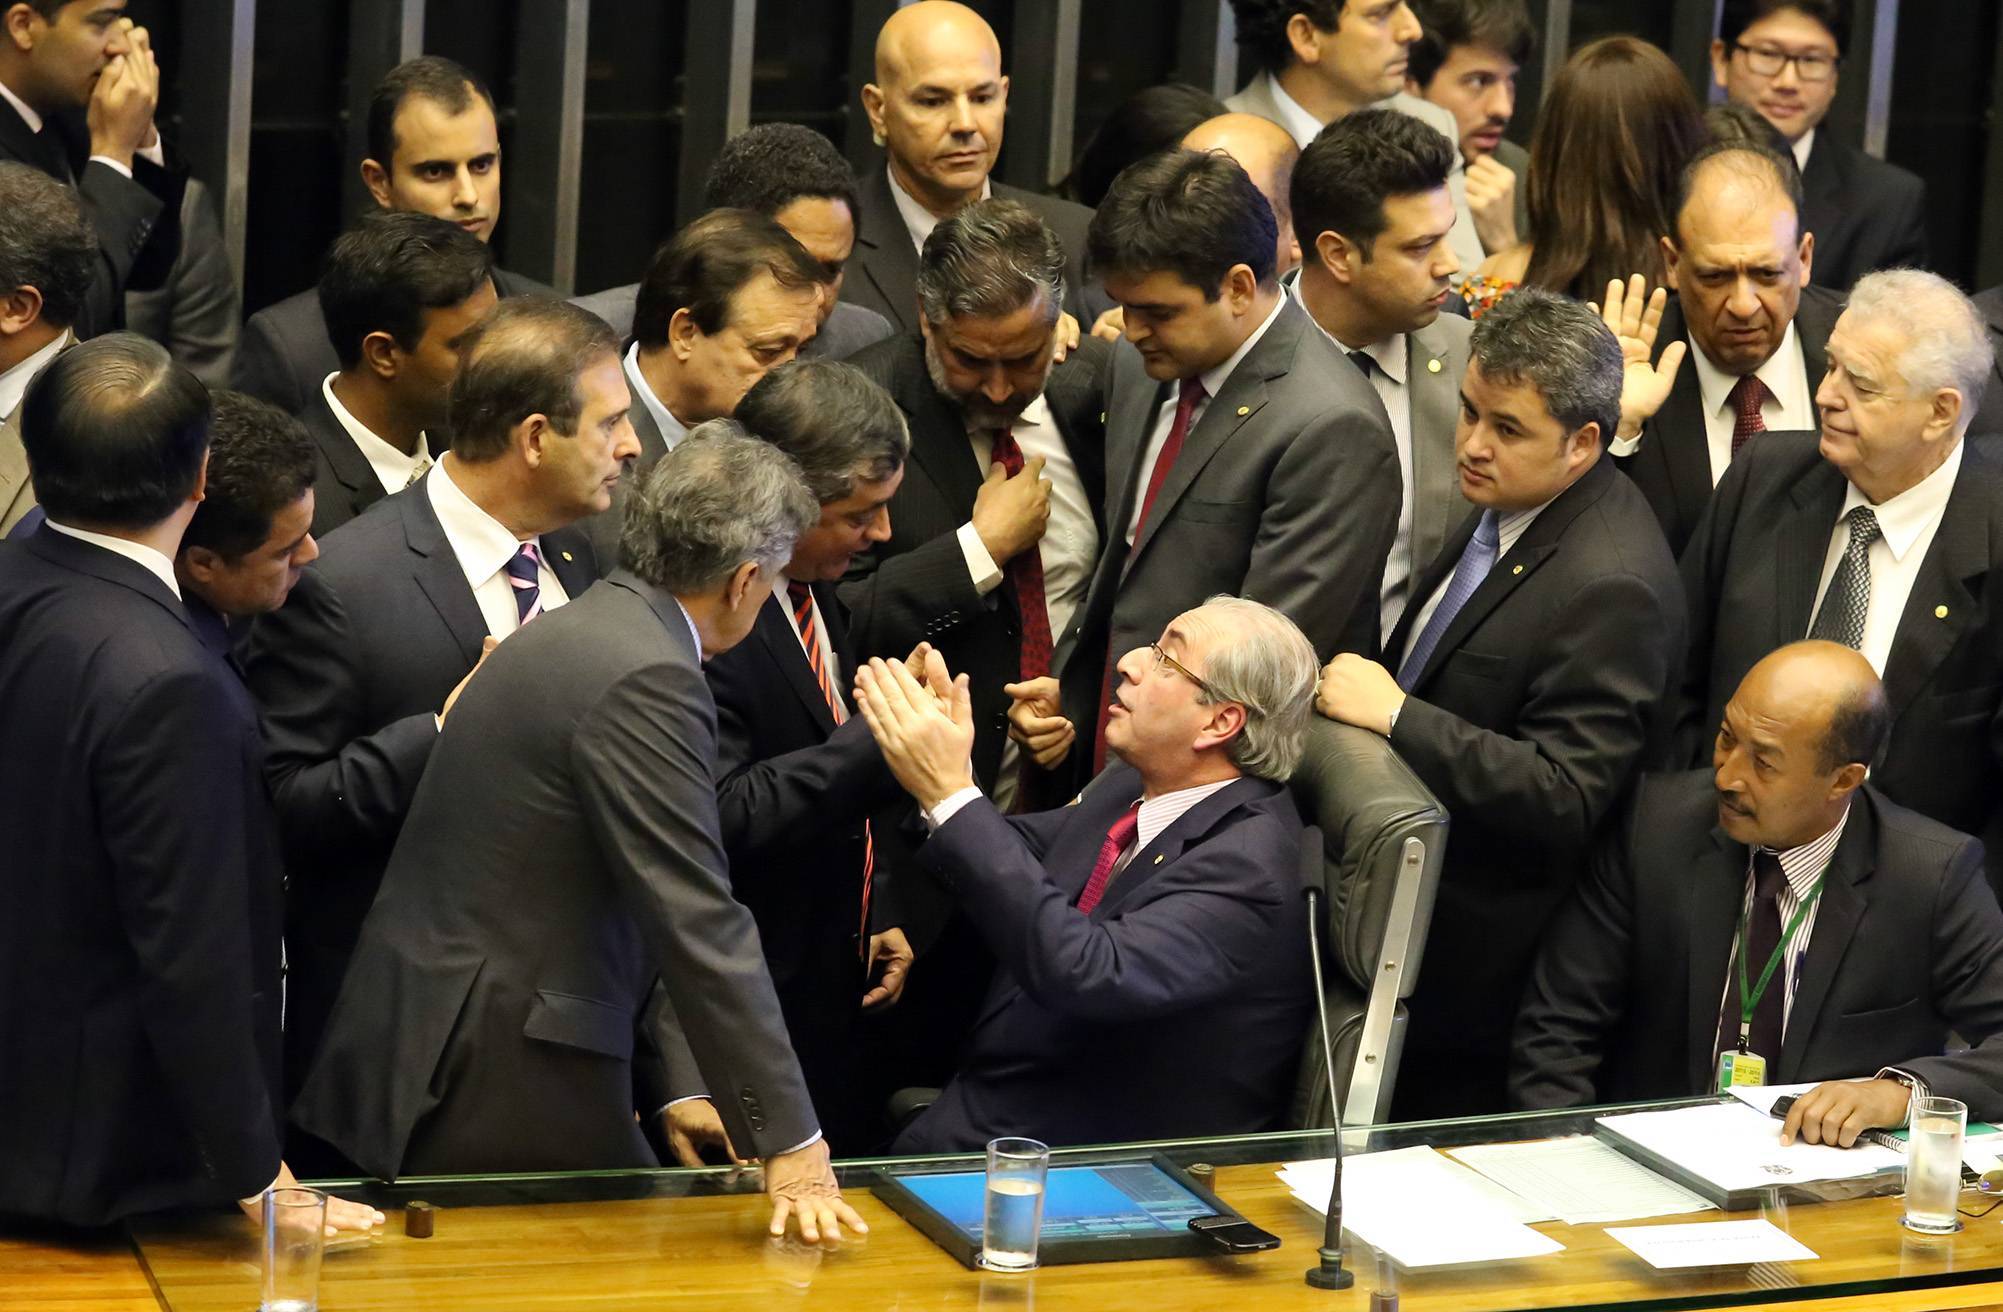 Sessão para votação dos integrantes da comissão especial destinada a dar parecer sobre o pedido de impeachment da presidente Dilma Rousseff, 08/12/2015